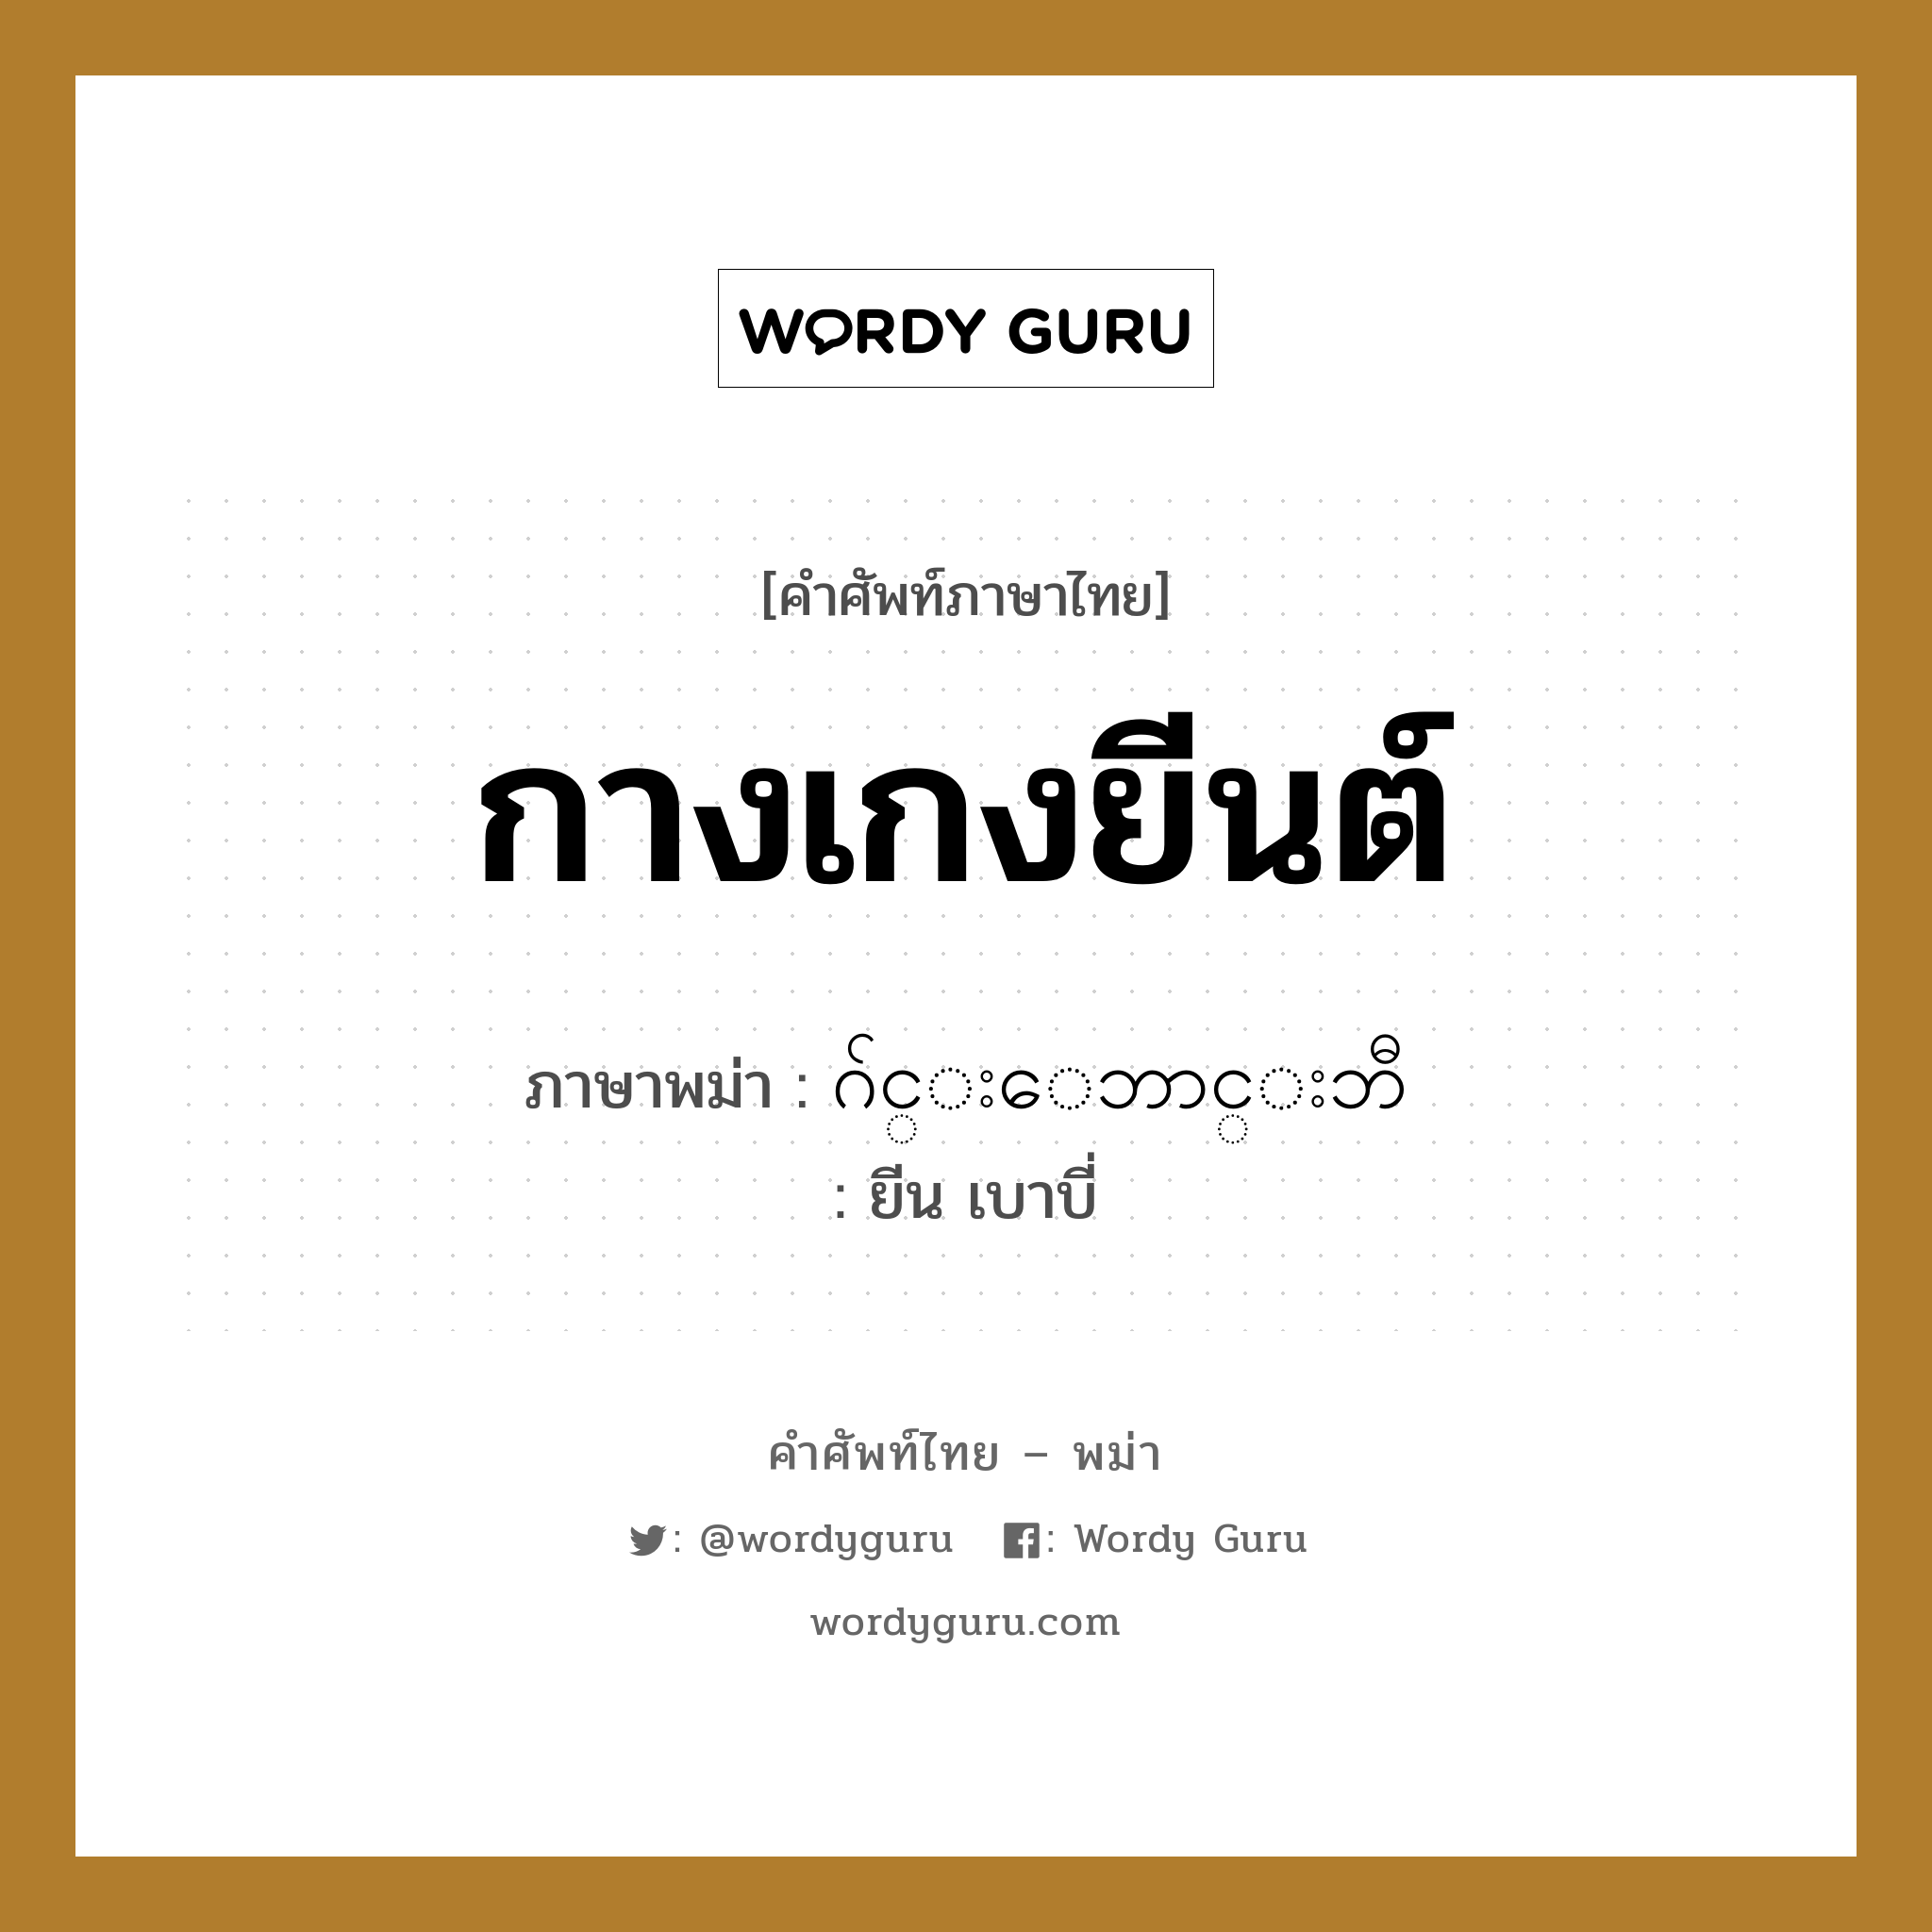 กางเกงยีนต์ ภาษาพม่าคืออะไร, คำศัพท์ภาษาไทย - พม่า กางเกงยีนต์ ภาษาพม่า ဂ်င္းေဘာင္းဘီ หมวด หมวดของใช้ส่วนตัว ยีน เบาบี่ หมวด หมวดของใช้ส่วนตัว